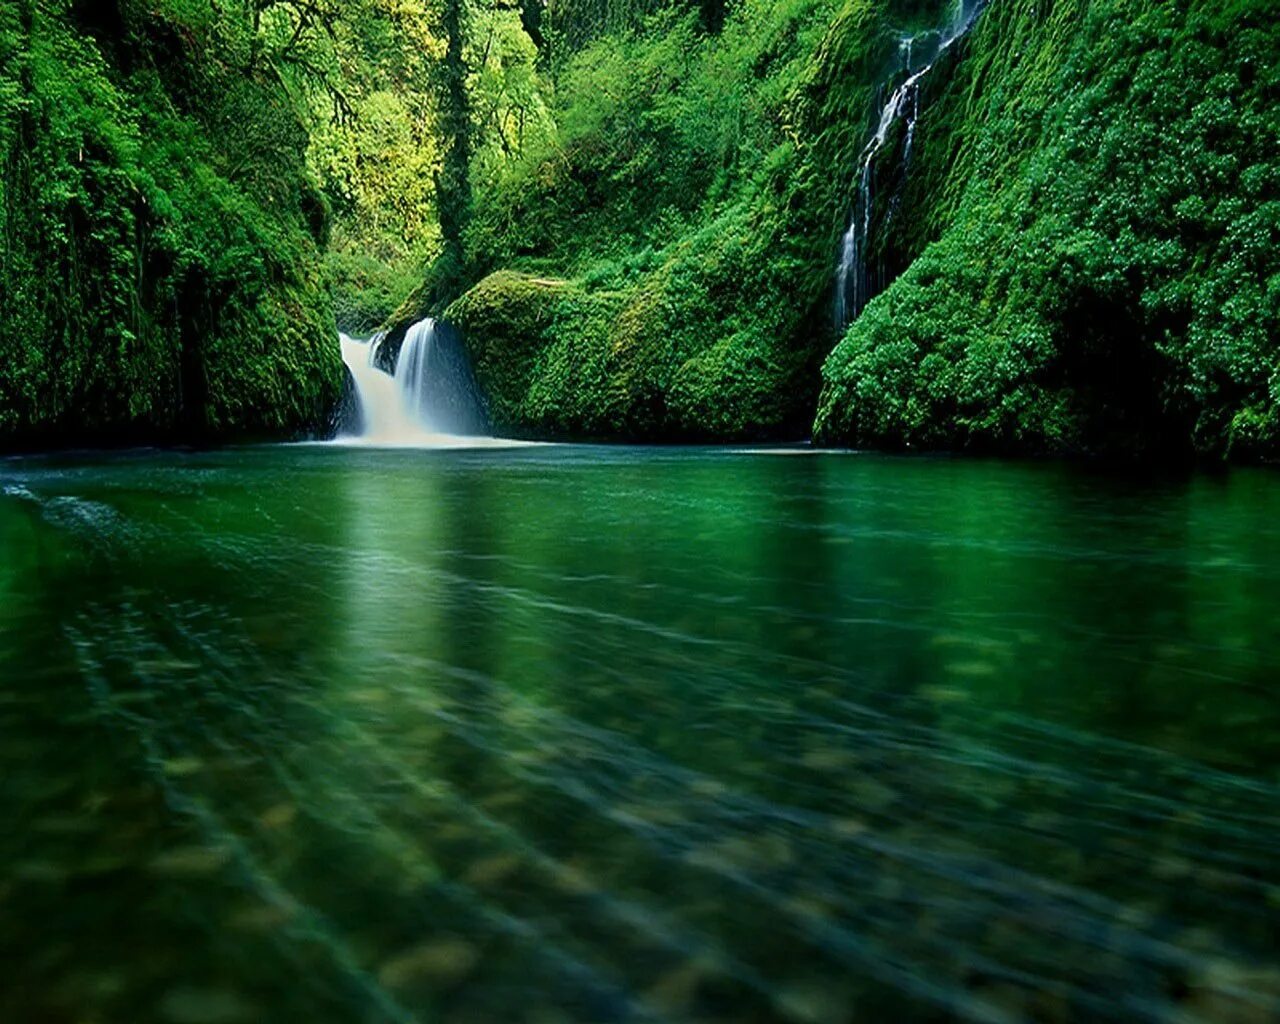 Картинка на большой экран. Природа. Красивая природа 3д. Обои на андроид природа. Природа зеленая водопад.